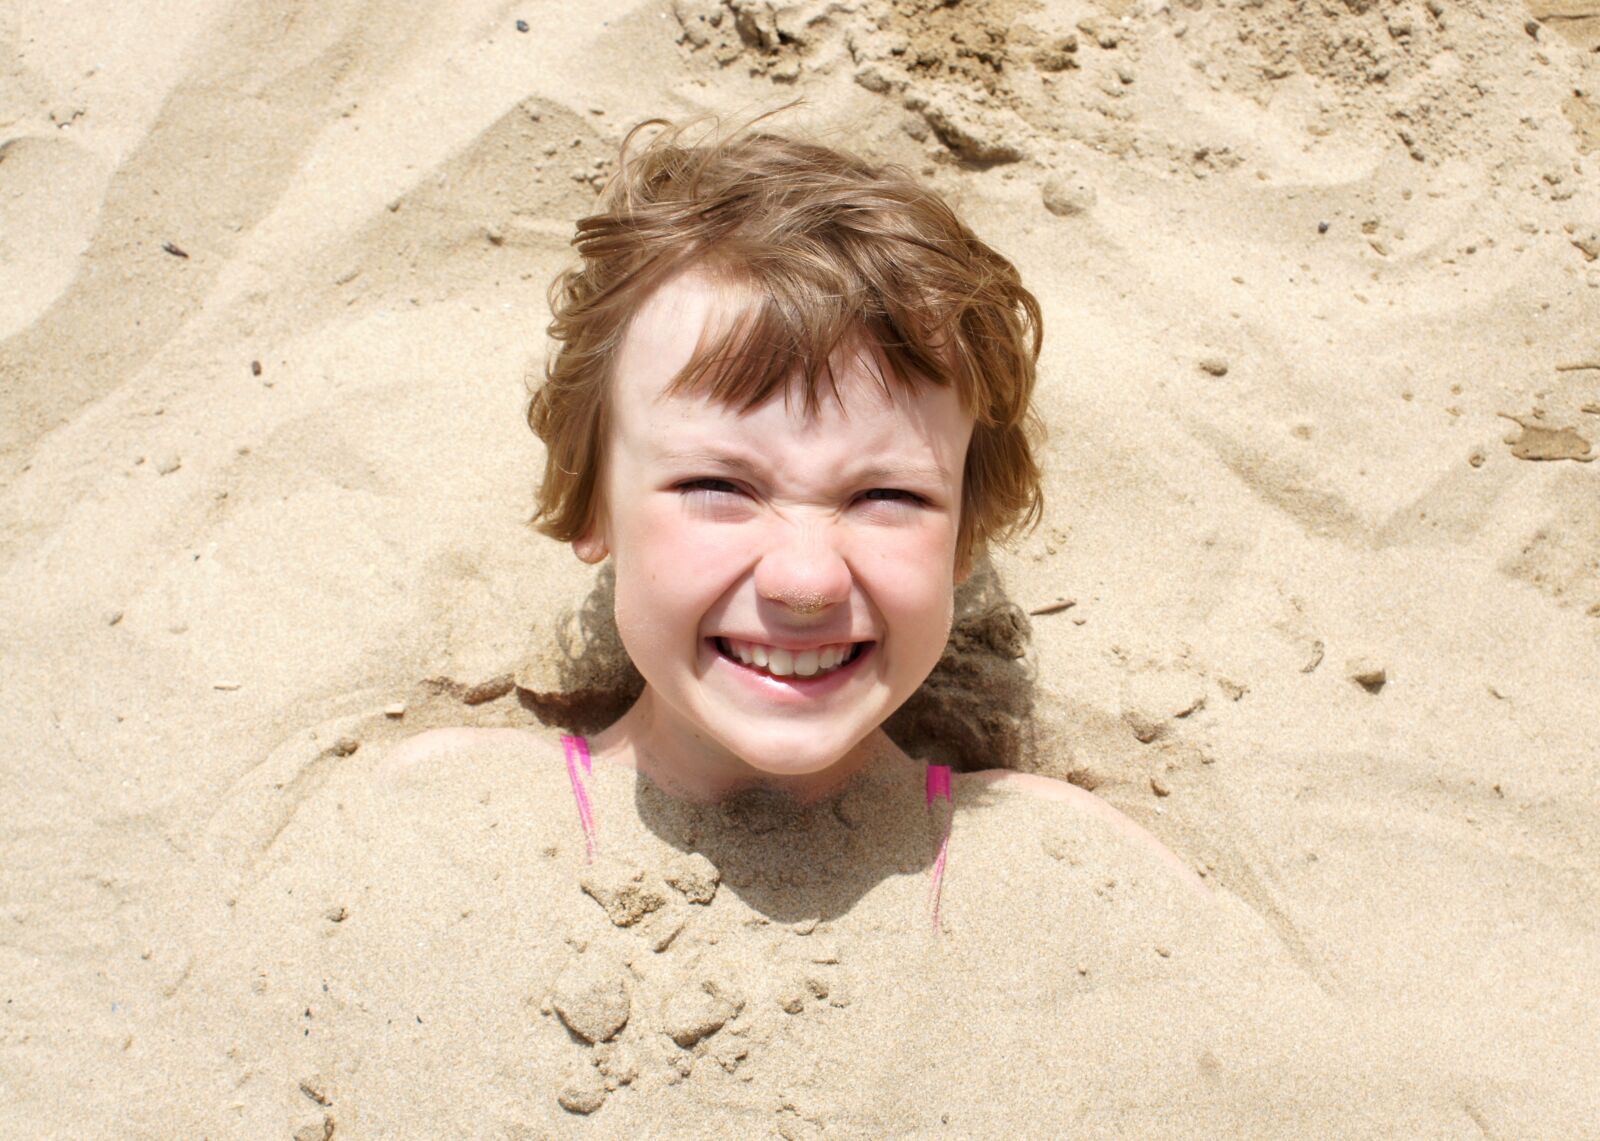 Sony Alpha DSLR-A550 sample photo. Girl, beach, sand photography